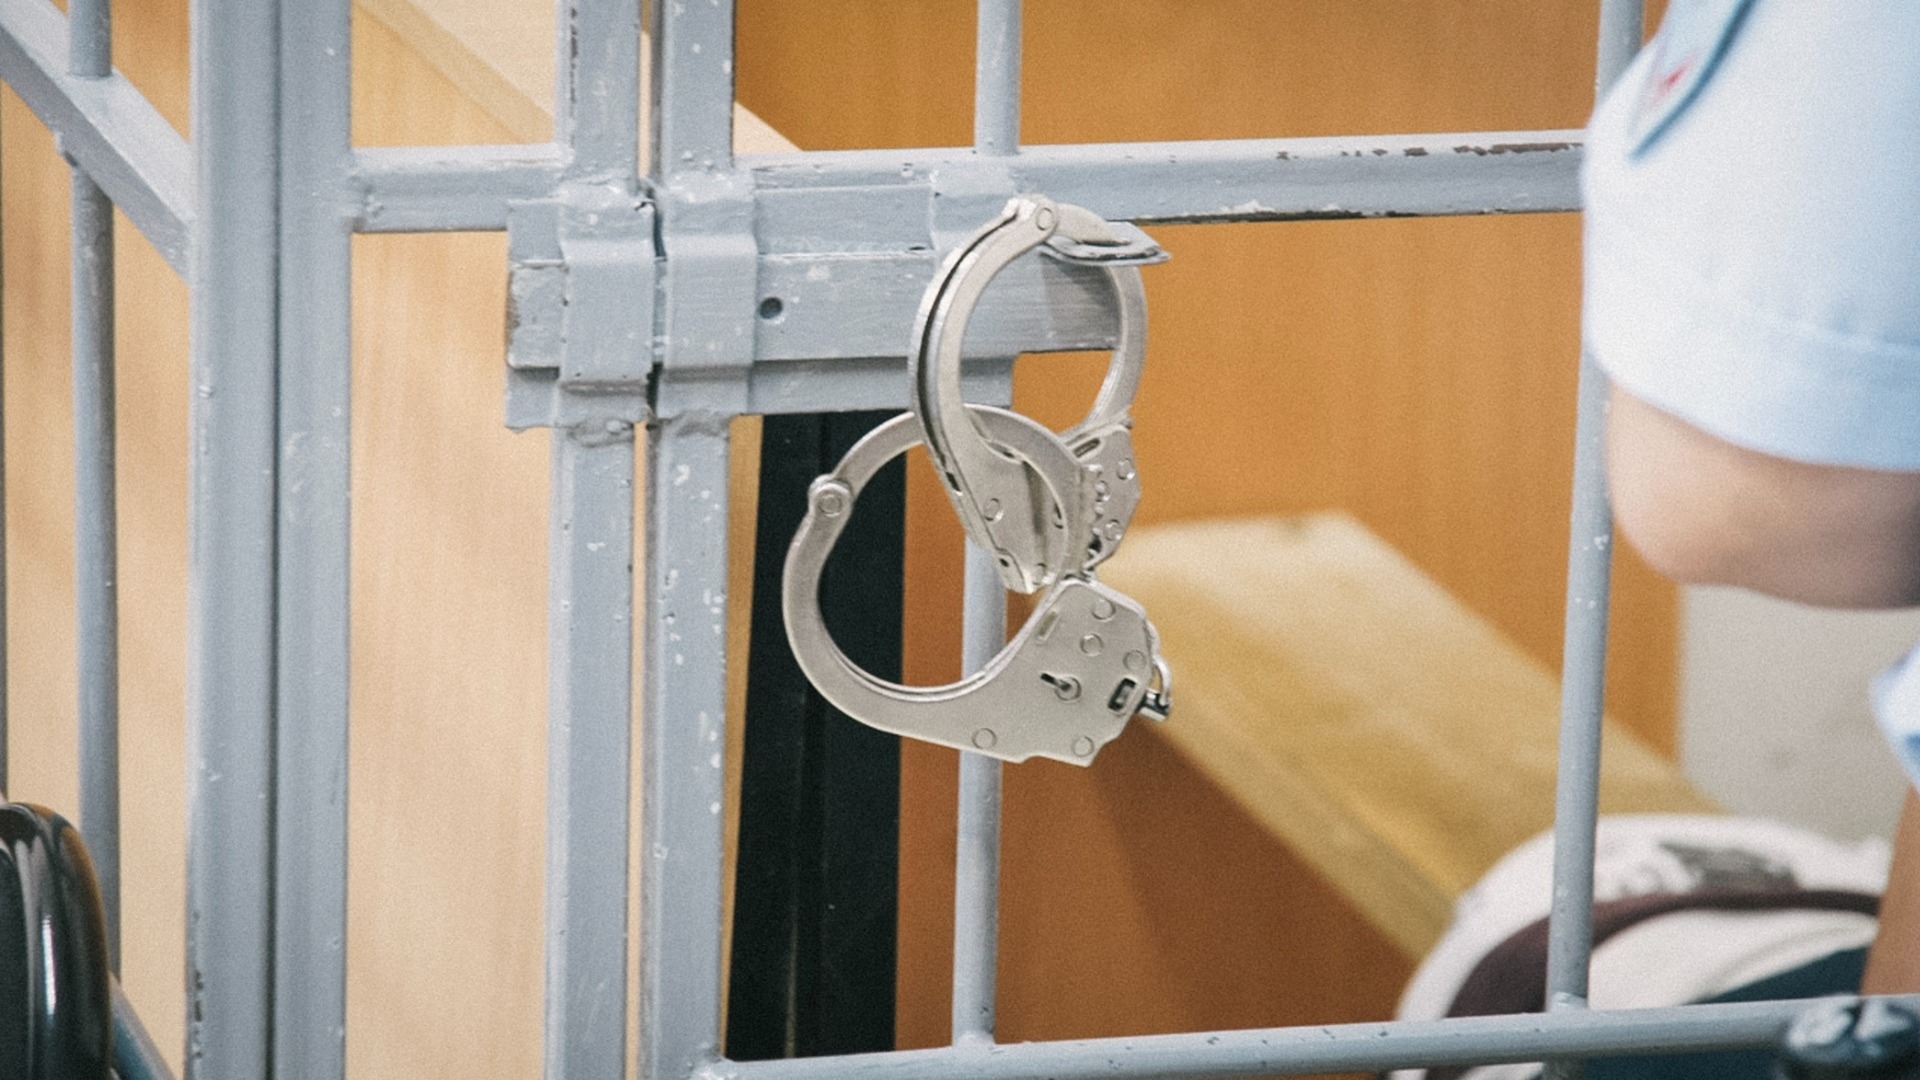 Жителей Радужного и кавказца отправили под суд за пытки и похищение человека